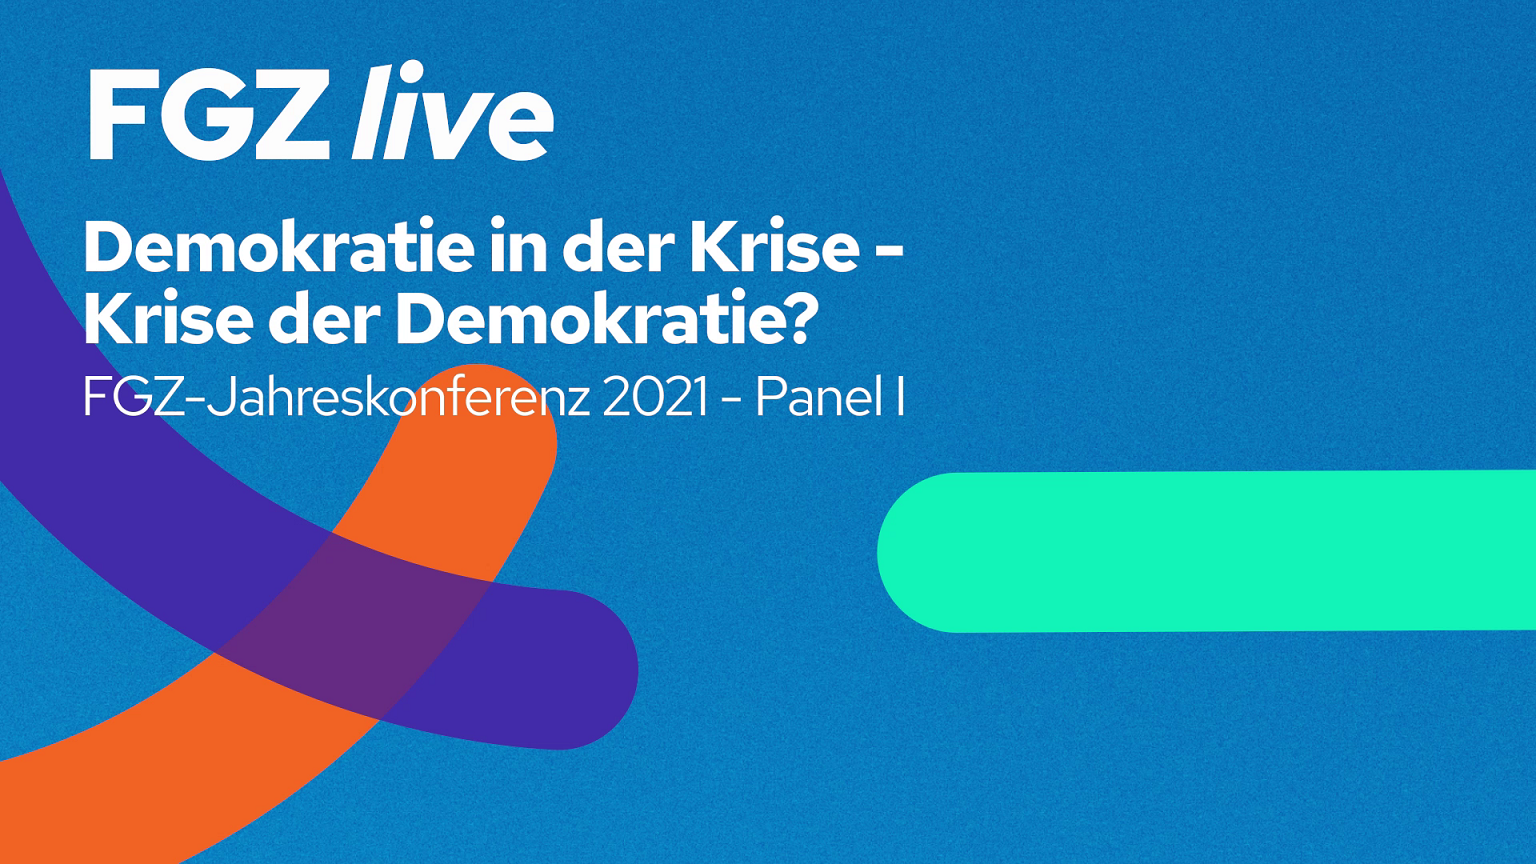 Demokratie in der Krise - Krise der Demokratie? - Vortrags-Panel zur FGZ-Jahreskonferenz - FGZ live - Image